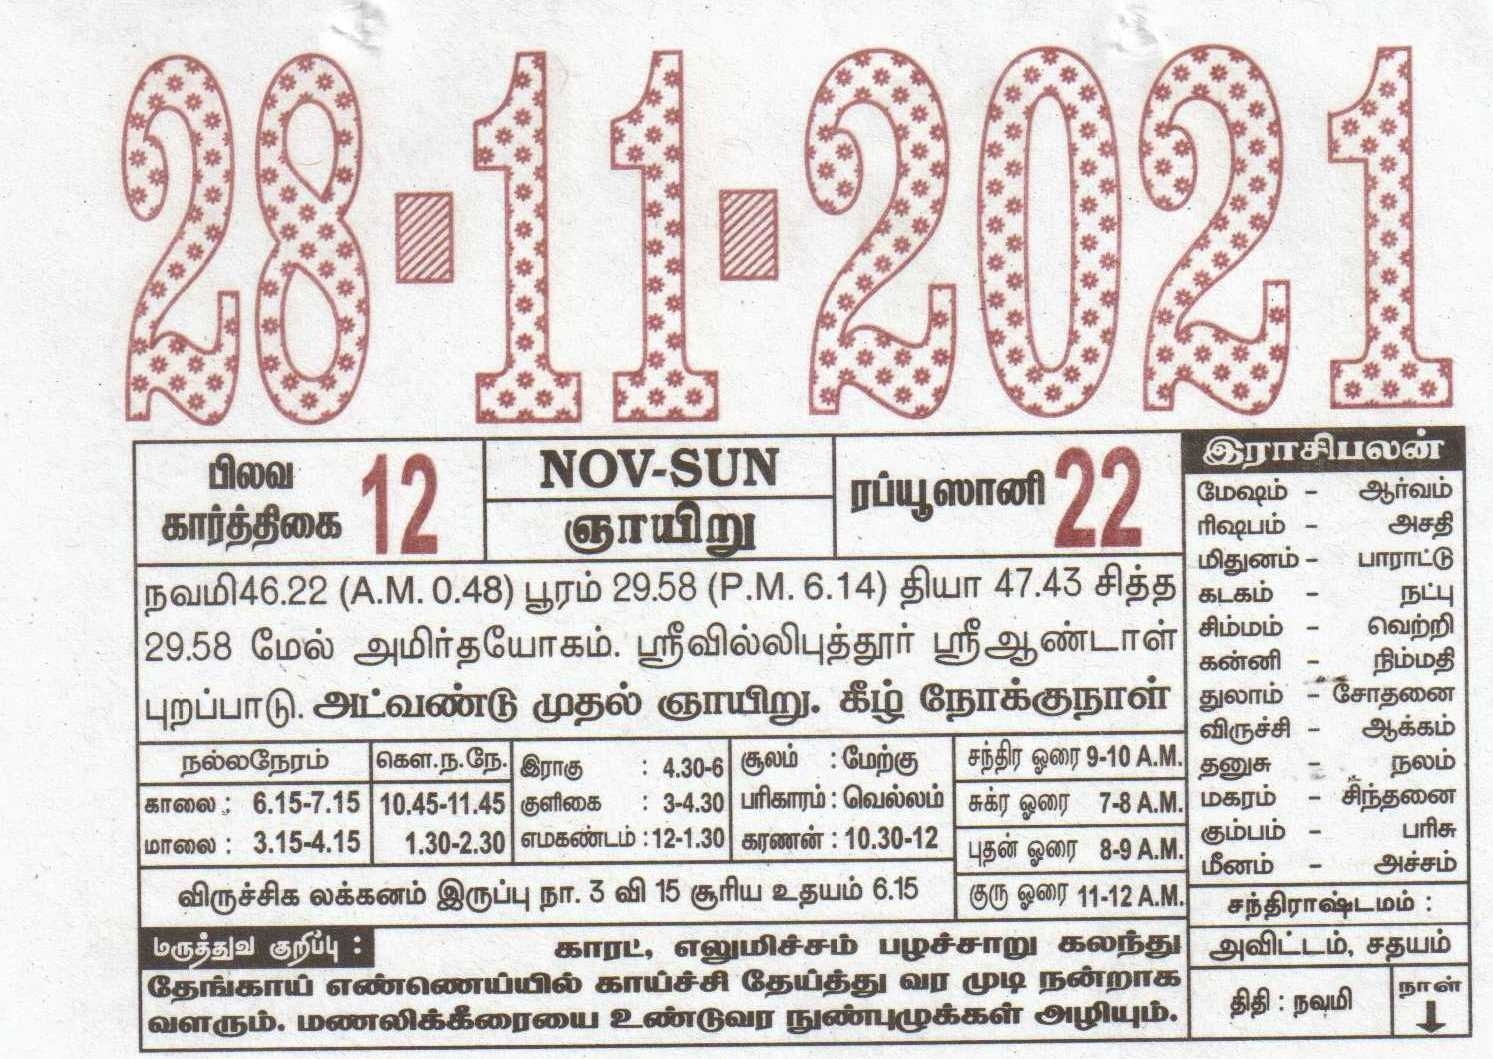 28-11-2021 Daily Calendar | Date 28 , January Daily Tear Off Calendar | Daily Panchangam Rasi Palan Tamil Calendar 2021 November